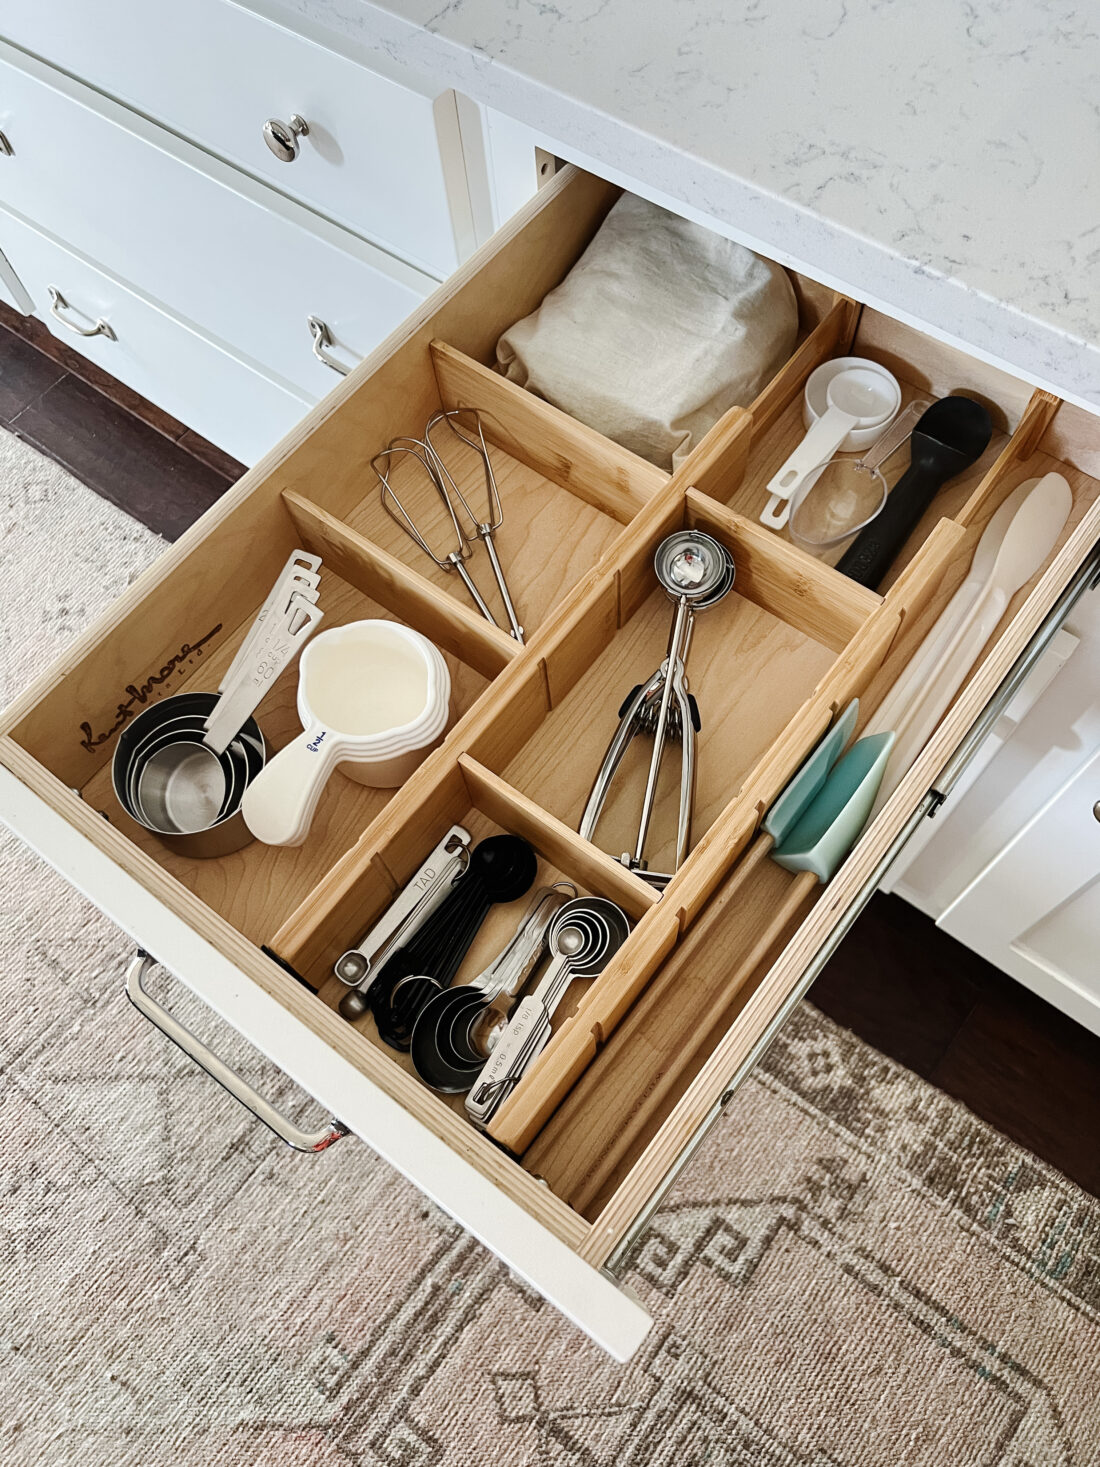 kitchen drawer organization inspiration